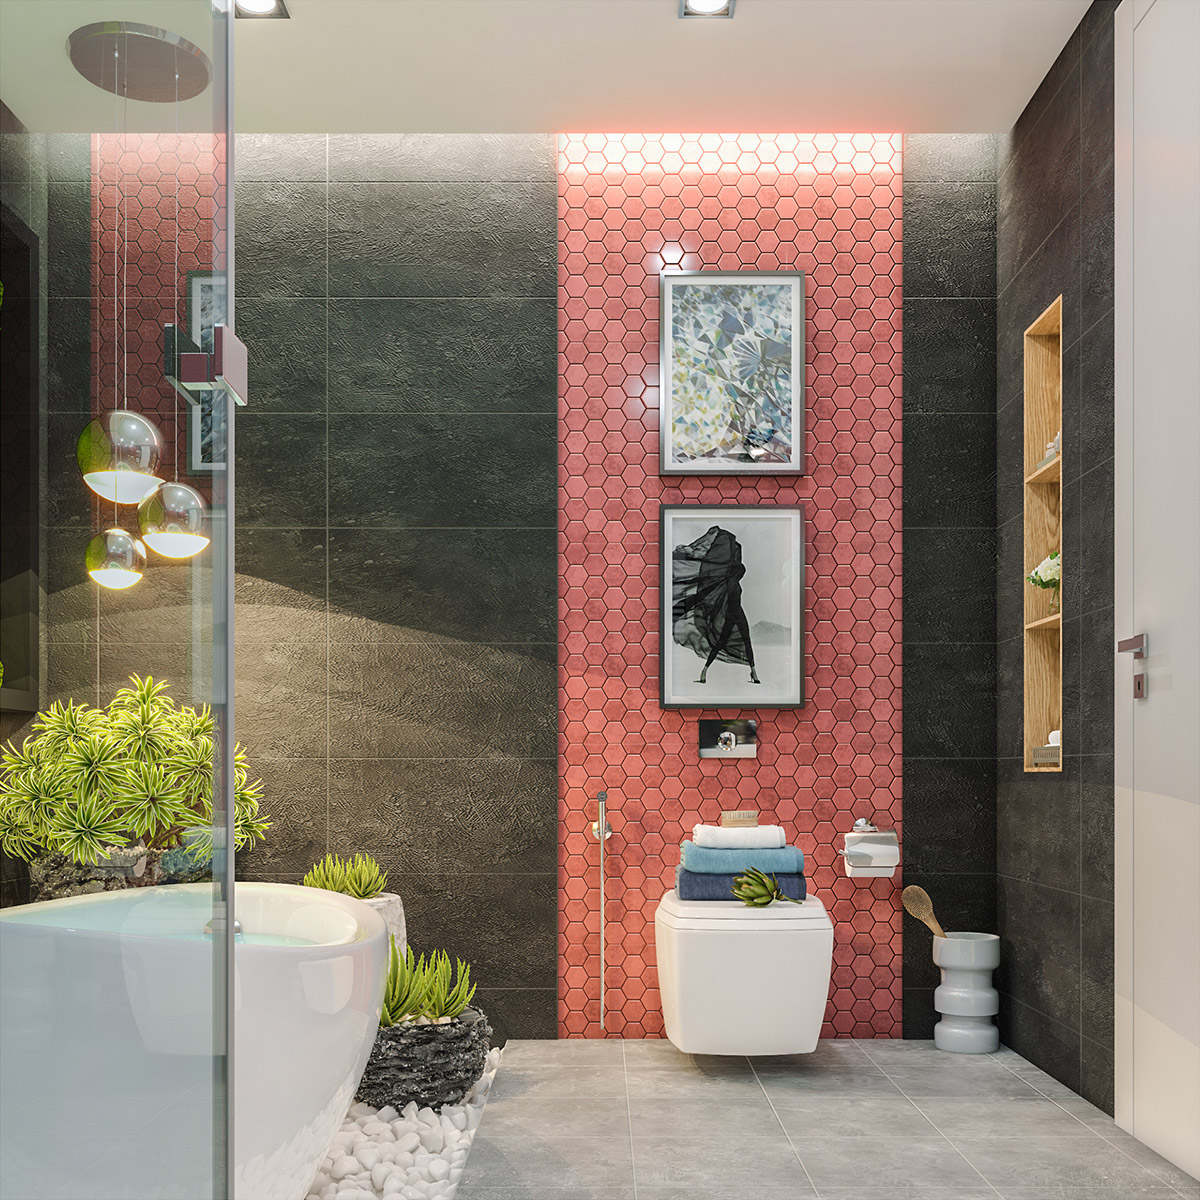 Mẫu phòng tắm đẹp gây ấn tượng thị giác mạnh mẽ bởi sự tương phản giữa gạch ốp tường hình lục giác màu hồng và gạch lớn màu xám đen.